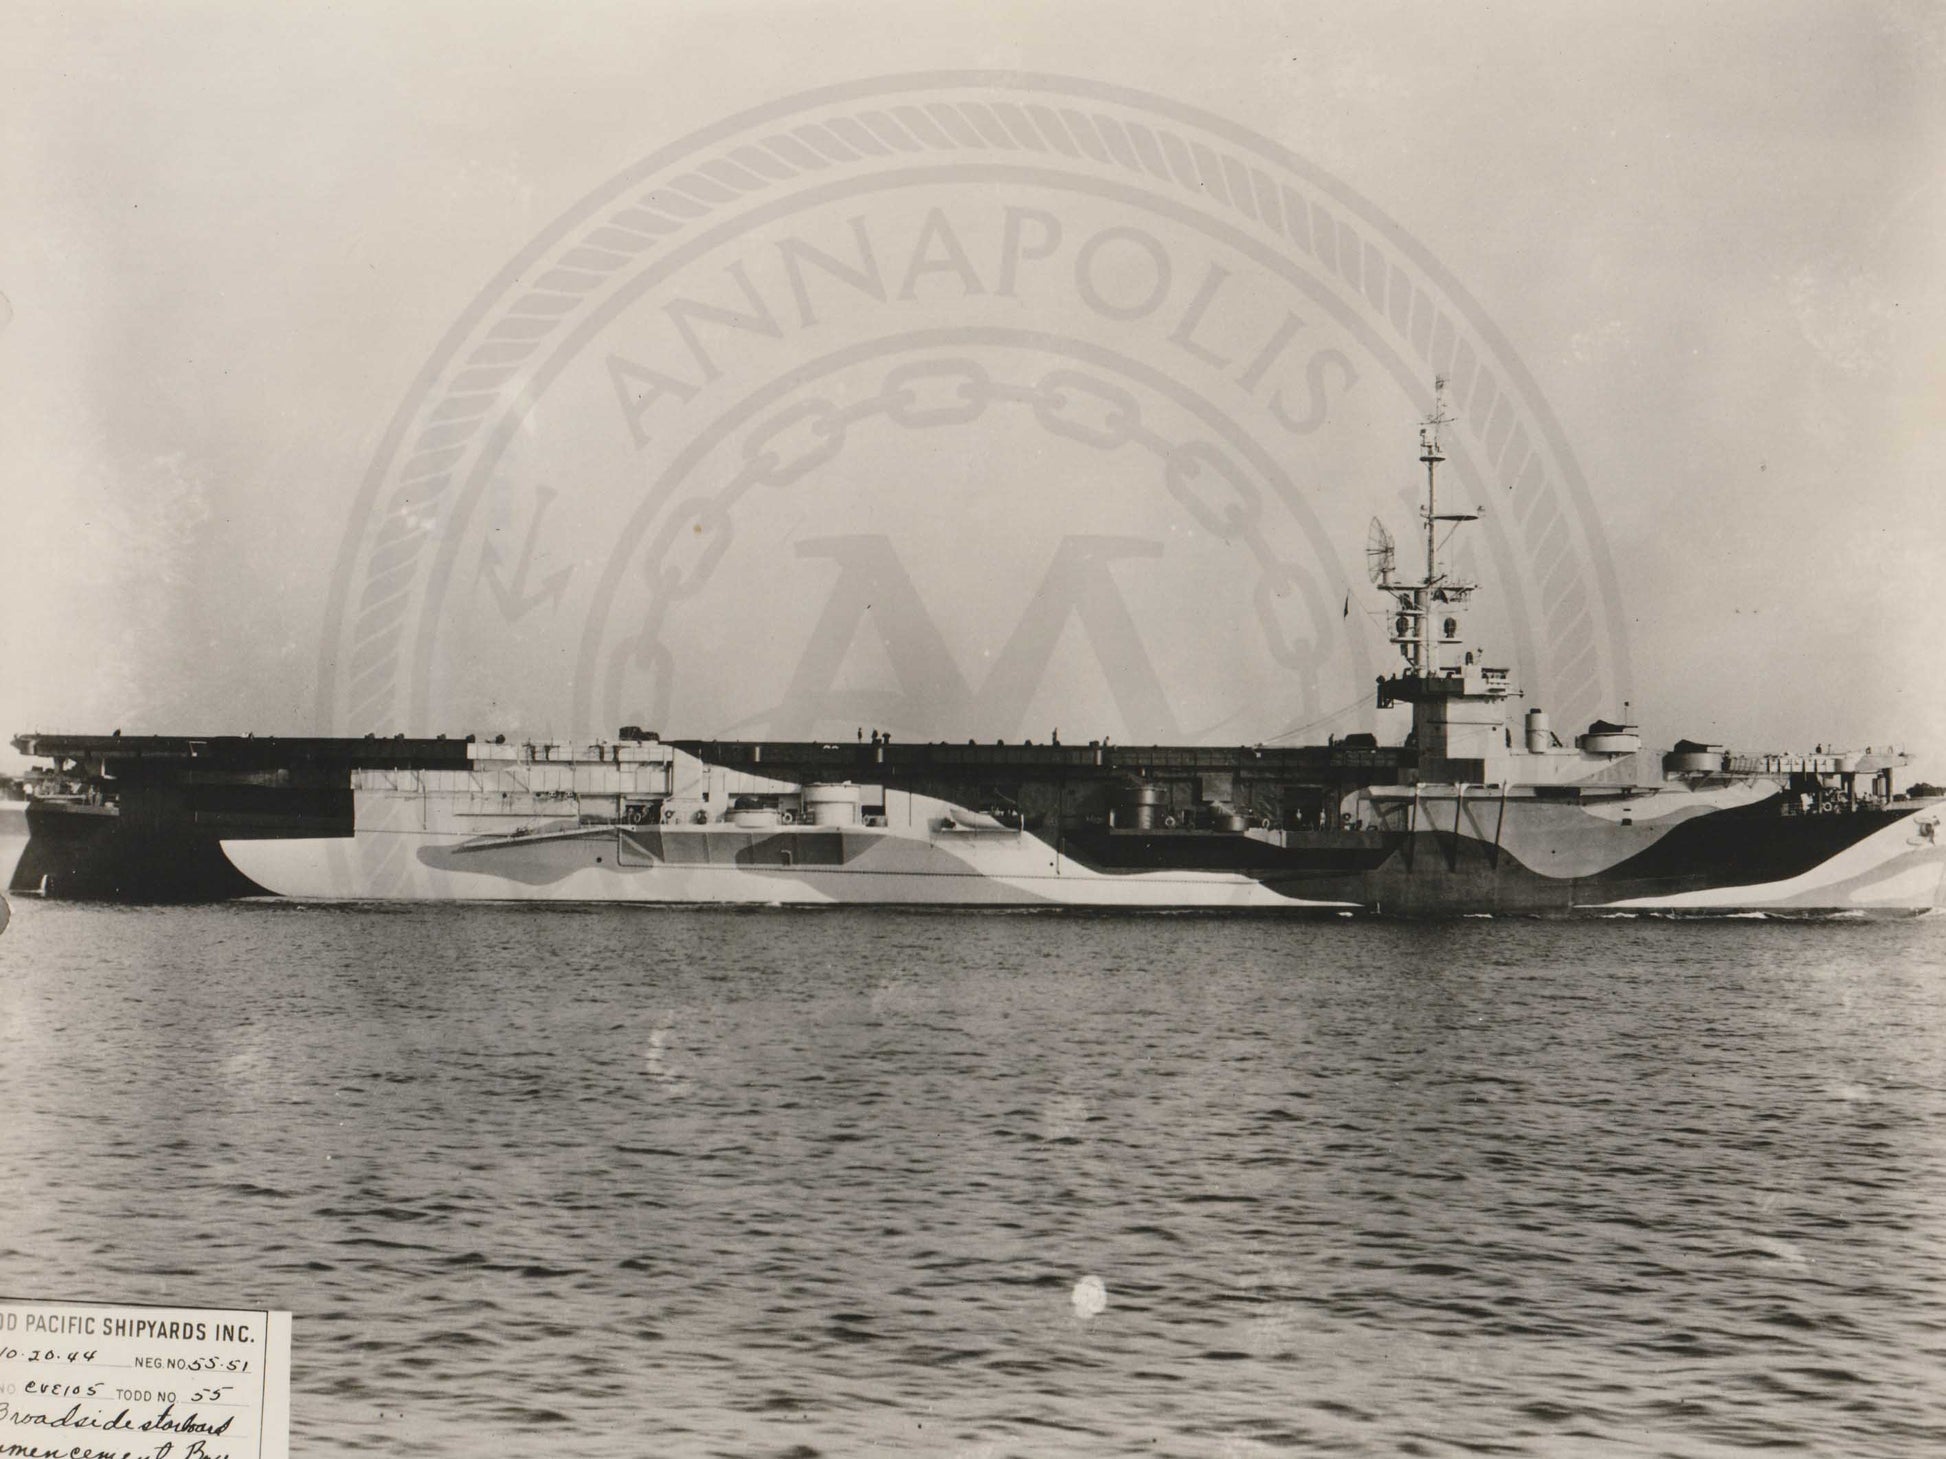 USS Commencement Bay (CVE-105) - Annapolis Maritime Antiques